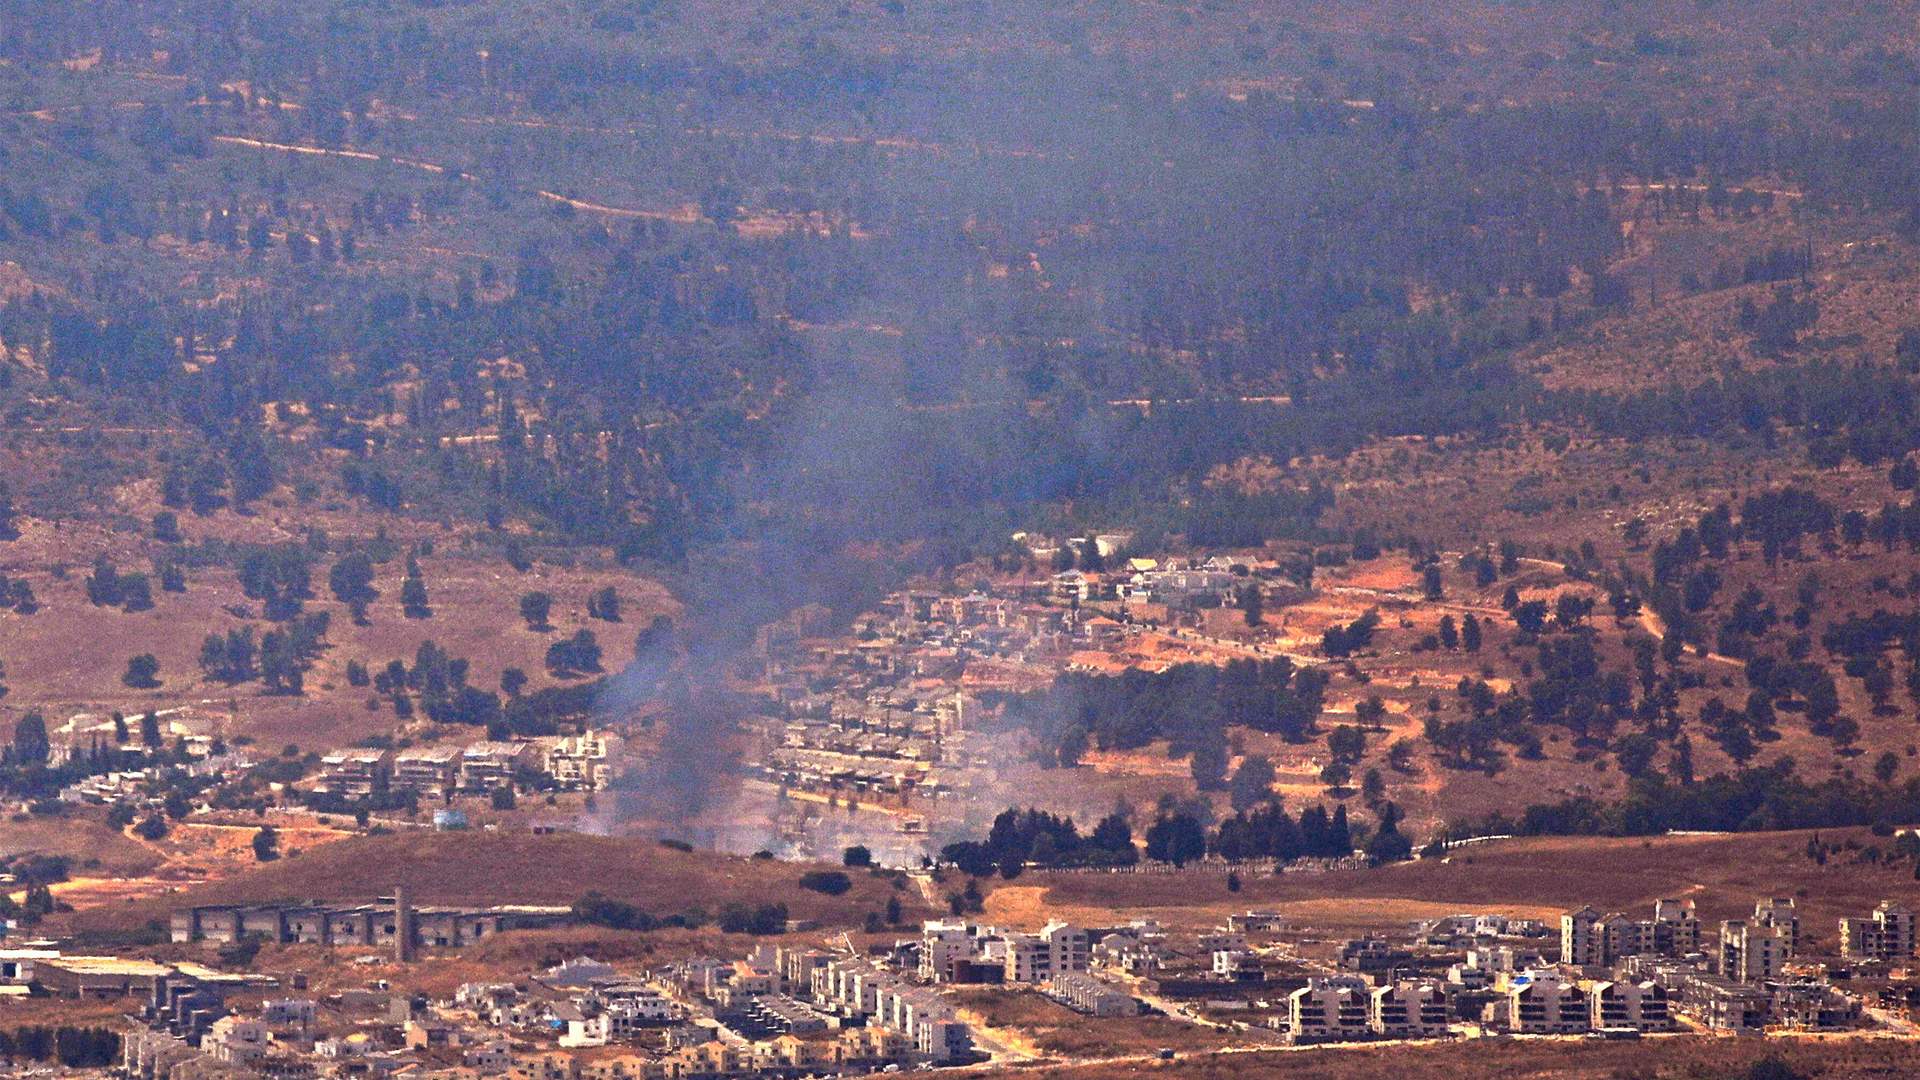 Hezbollah strikes back: Rockets target Israeli settlement in retaliation